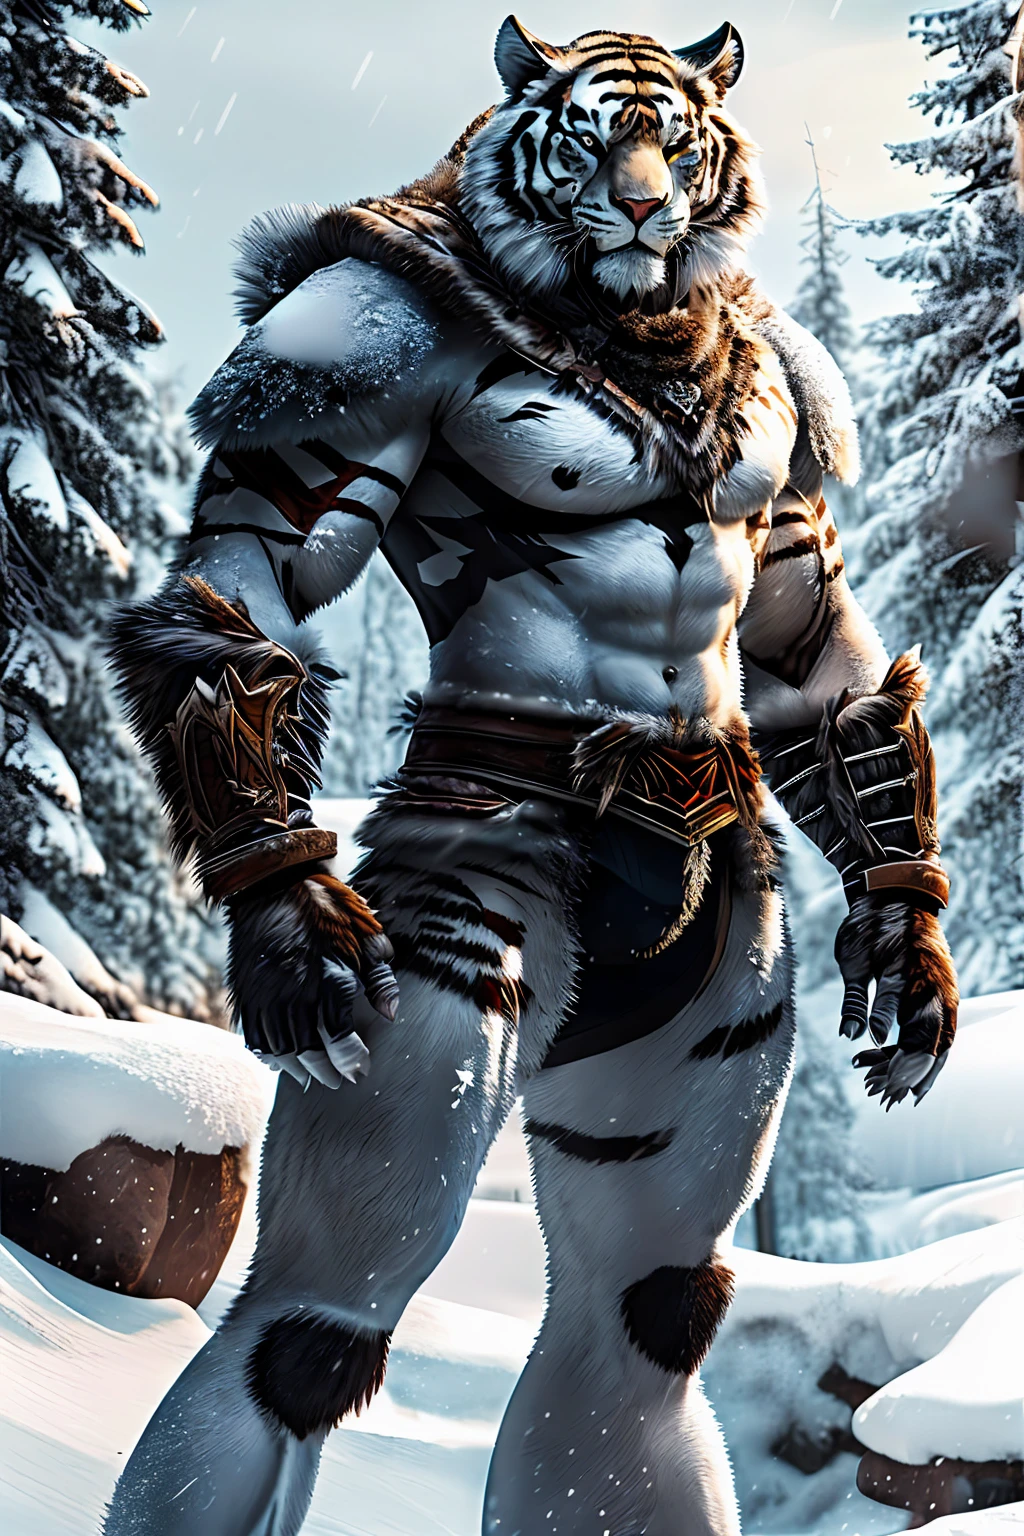 Tigre mutante parado sobre dos patas, Fondo de nieve, Brutal!, Ponte una armadura, garras grandes, Sed de sangre, Uno grande, piel gruesa, sin panel trasero, Fondo de nieveมืดมิด, conjuntivitis, aura demoniaca